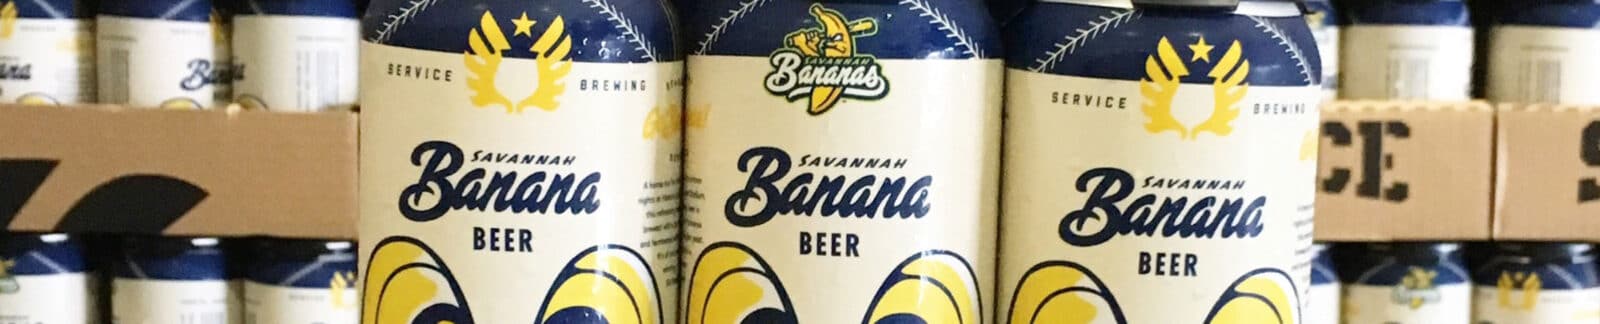 Savannah Banana Beer - header